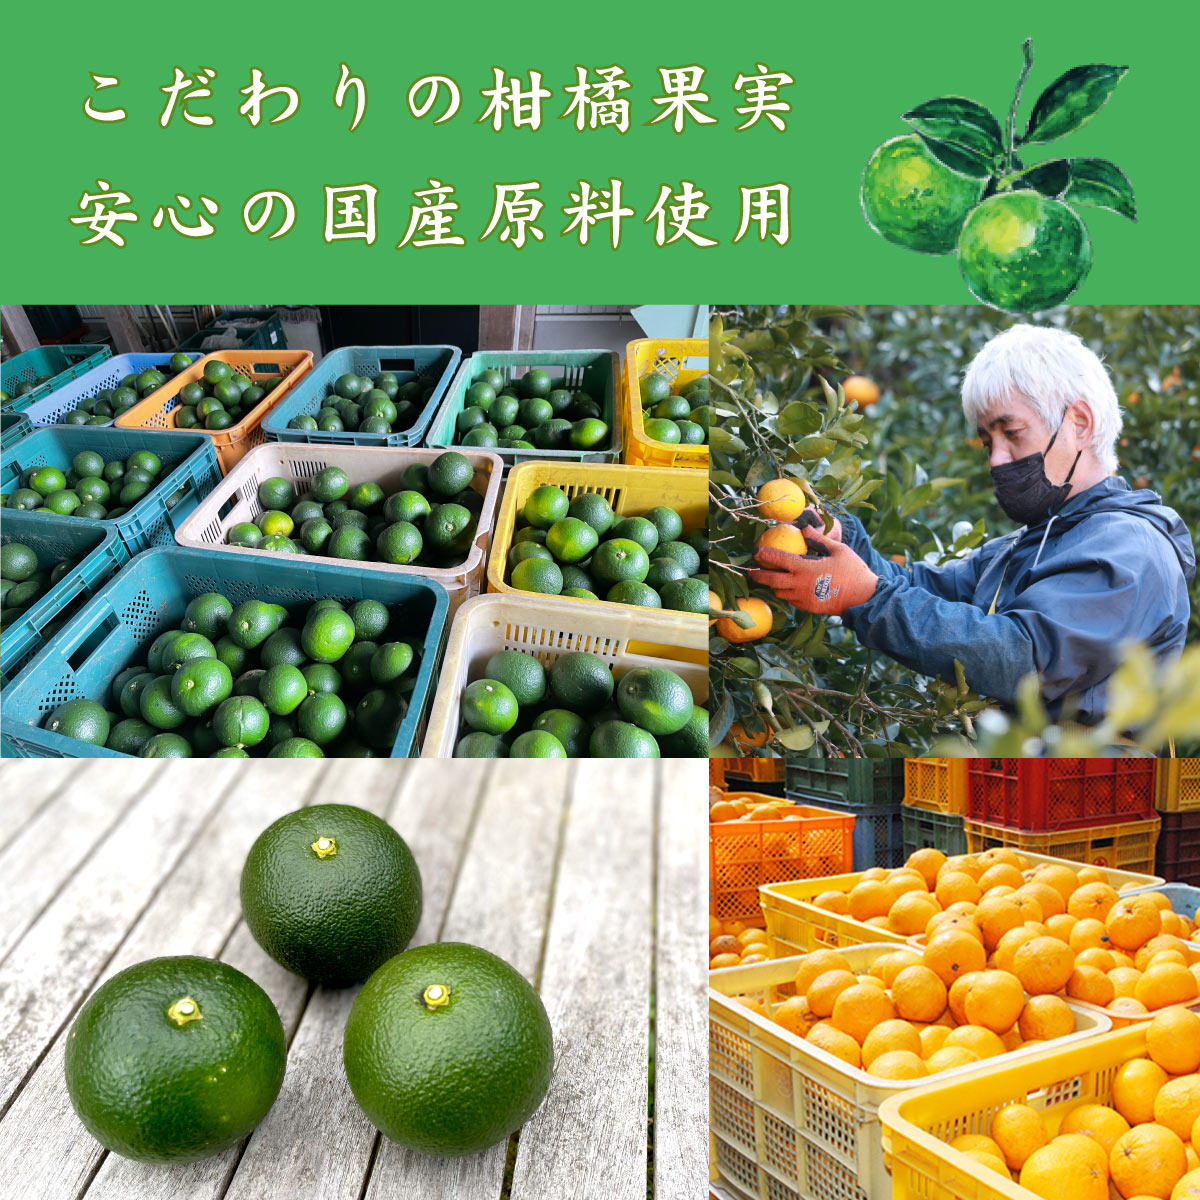 こだわりの柑橘果実、安心の国産原料使用